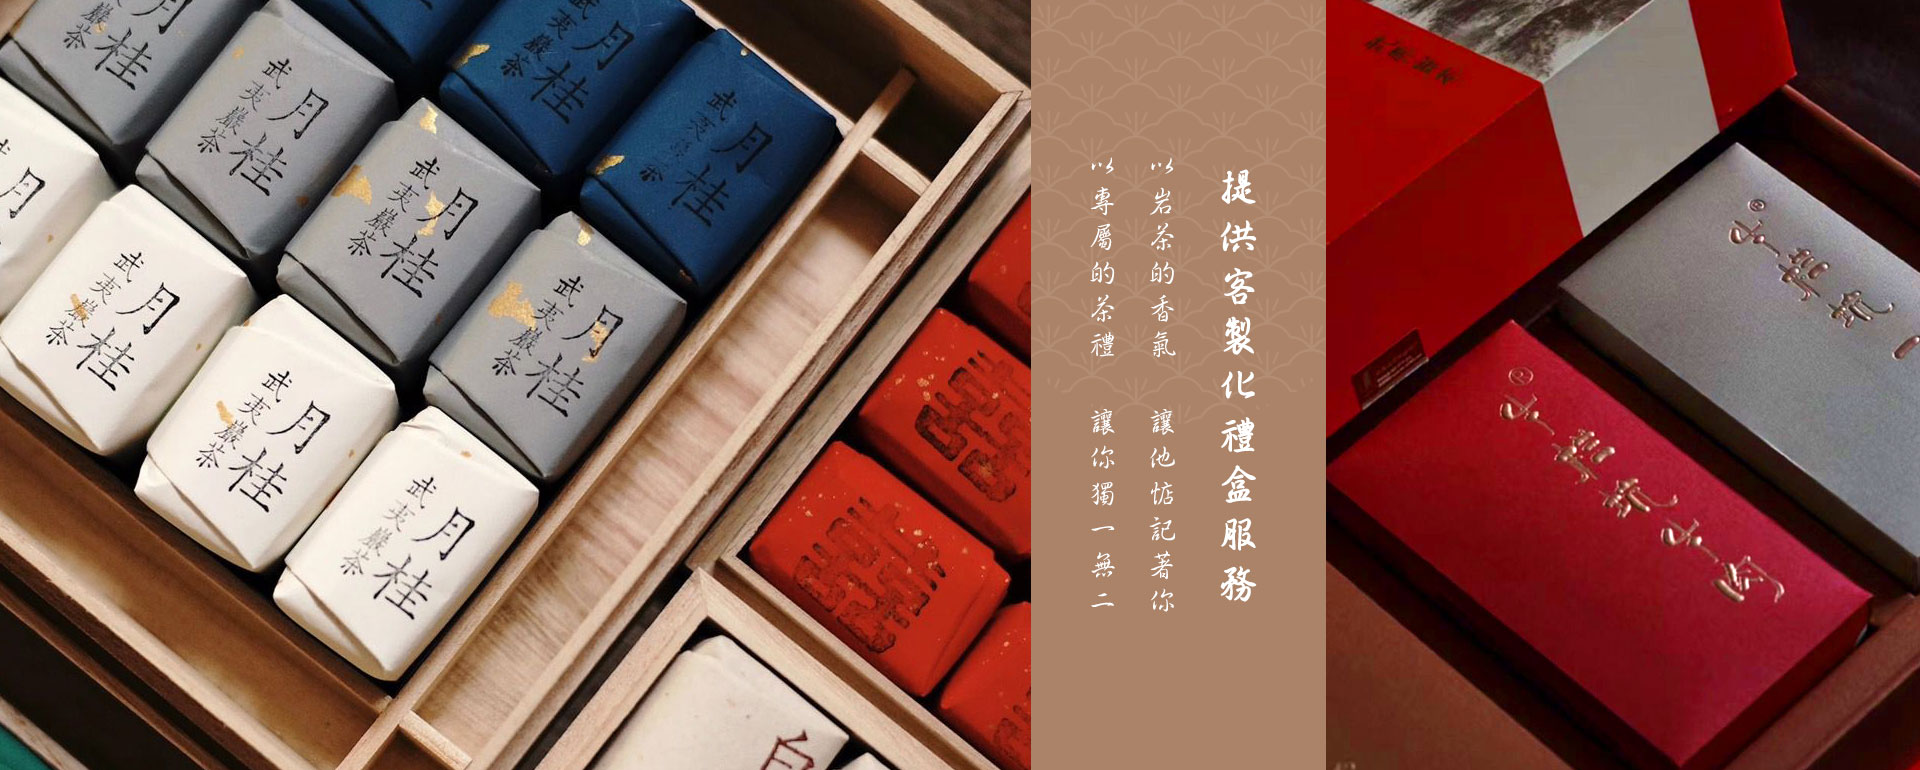 武夷岩茶、正岩茶大紅袍-客製化高級茶禮盒優惠推薦